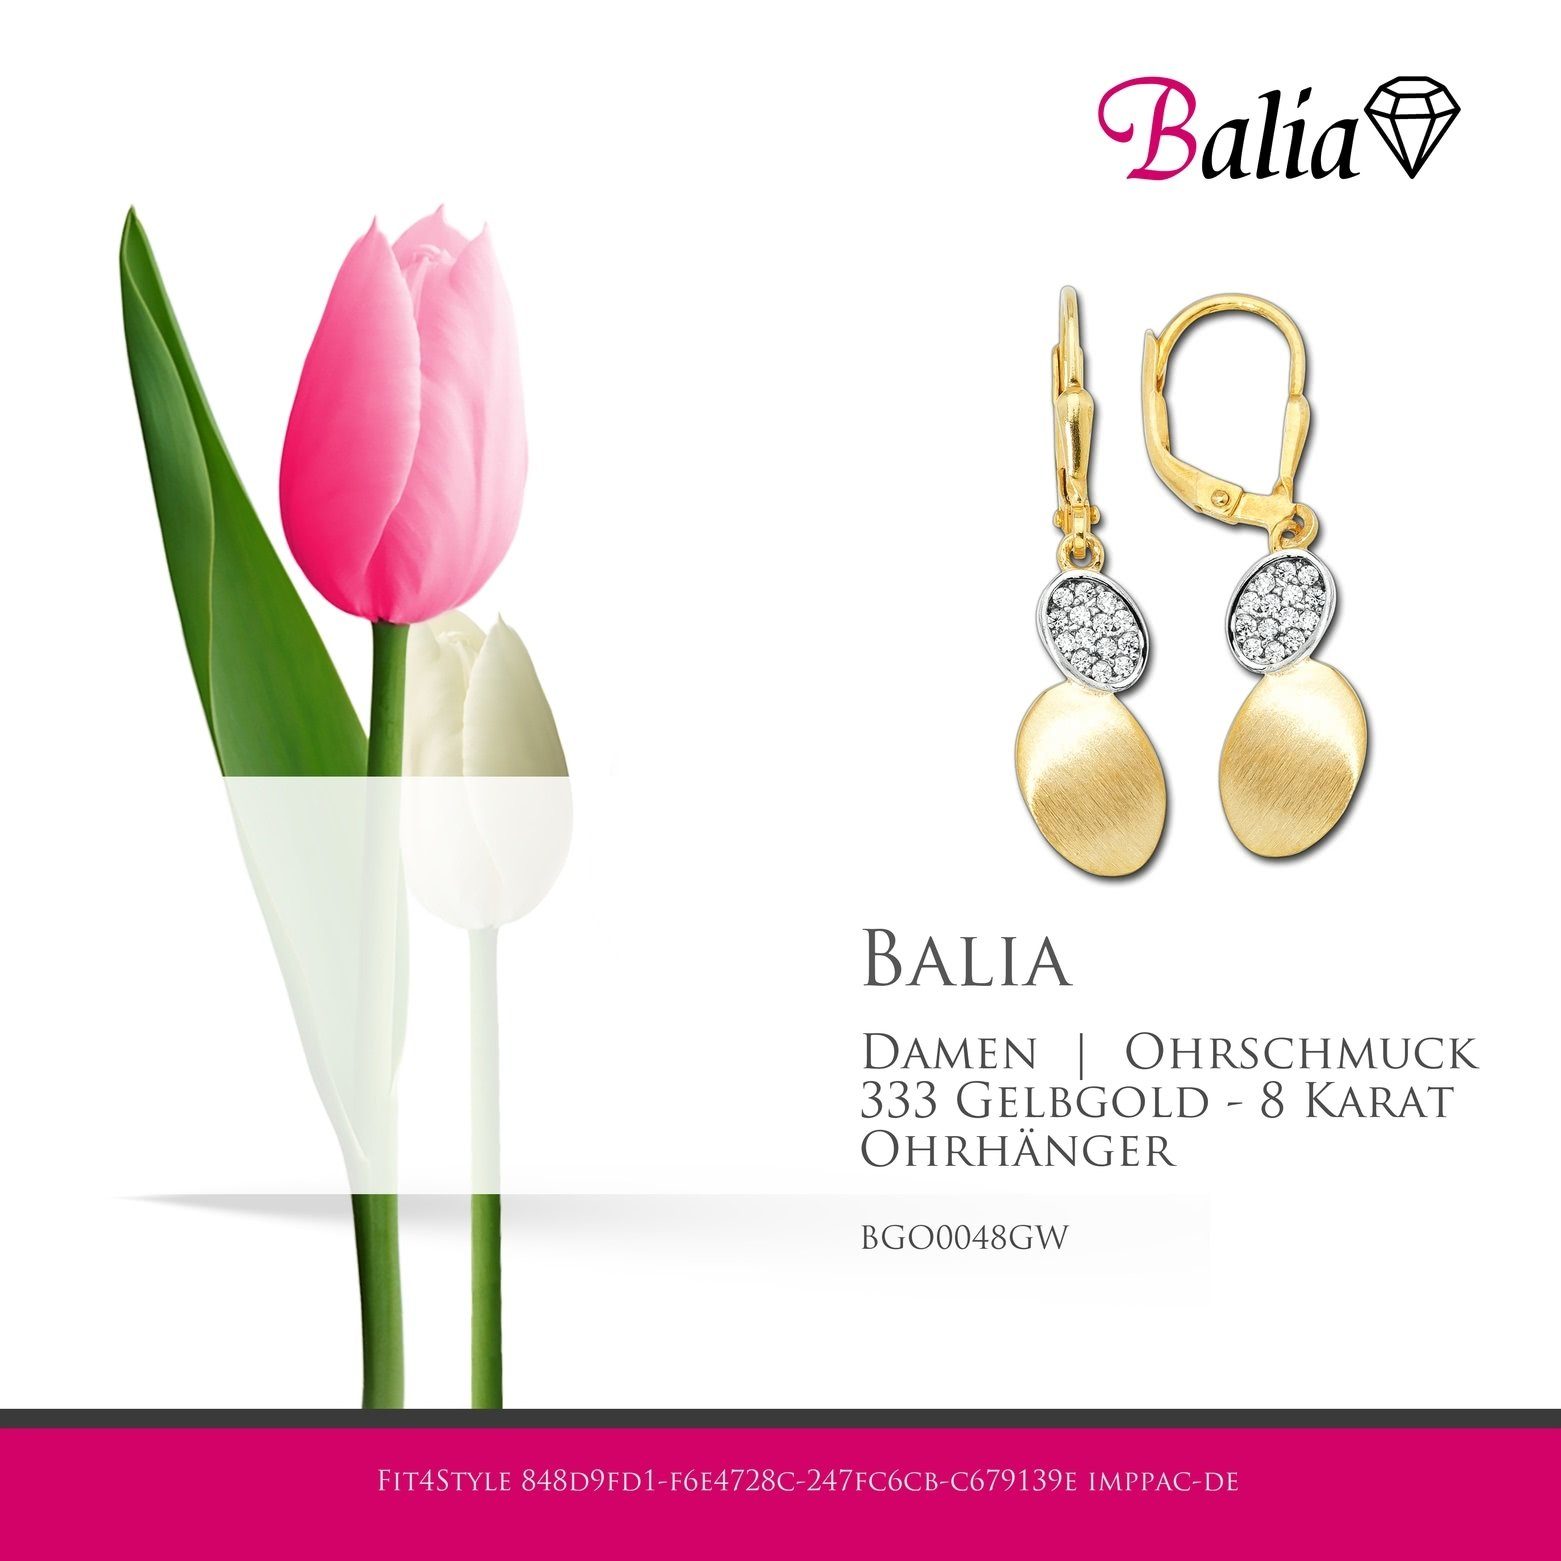 Farbe: Balia (Ohrhänger), weiß, 8K gold Ohrhänger Ohrhänger Gold Ohrhänger - Gelbgold 333 (Oval) Damen 8 Balia Karat, für aus Paar